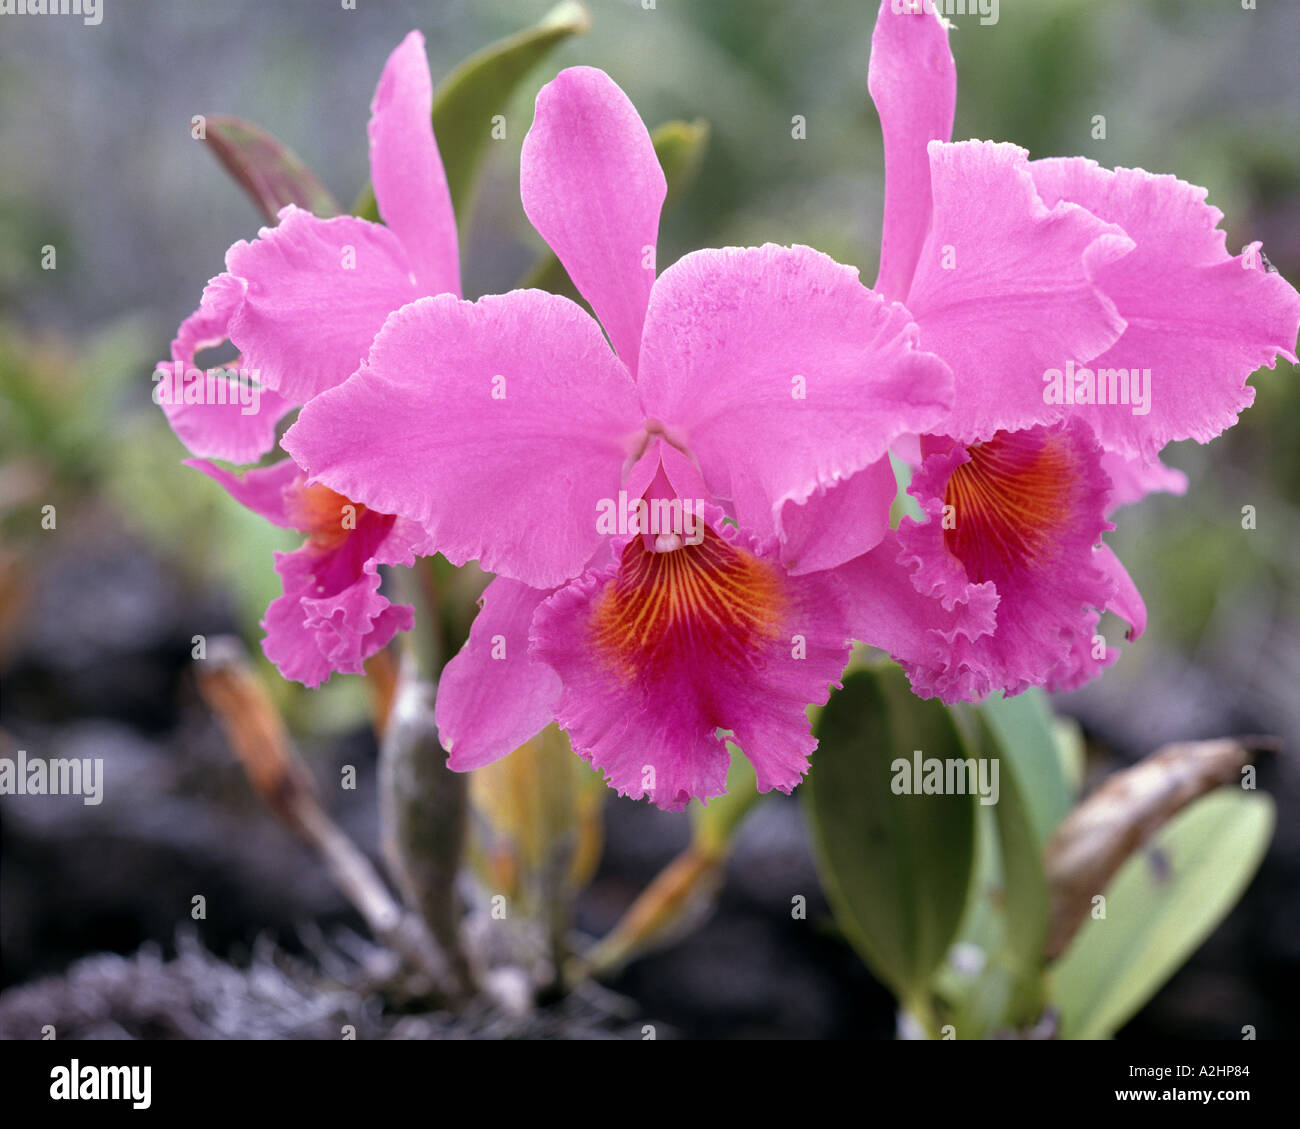 USA - HAWAII: Cattleya Orchid Stock Photo